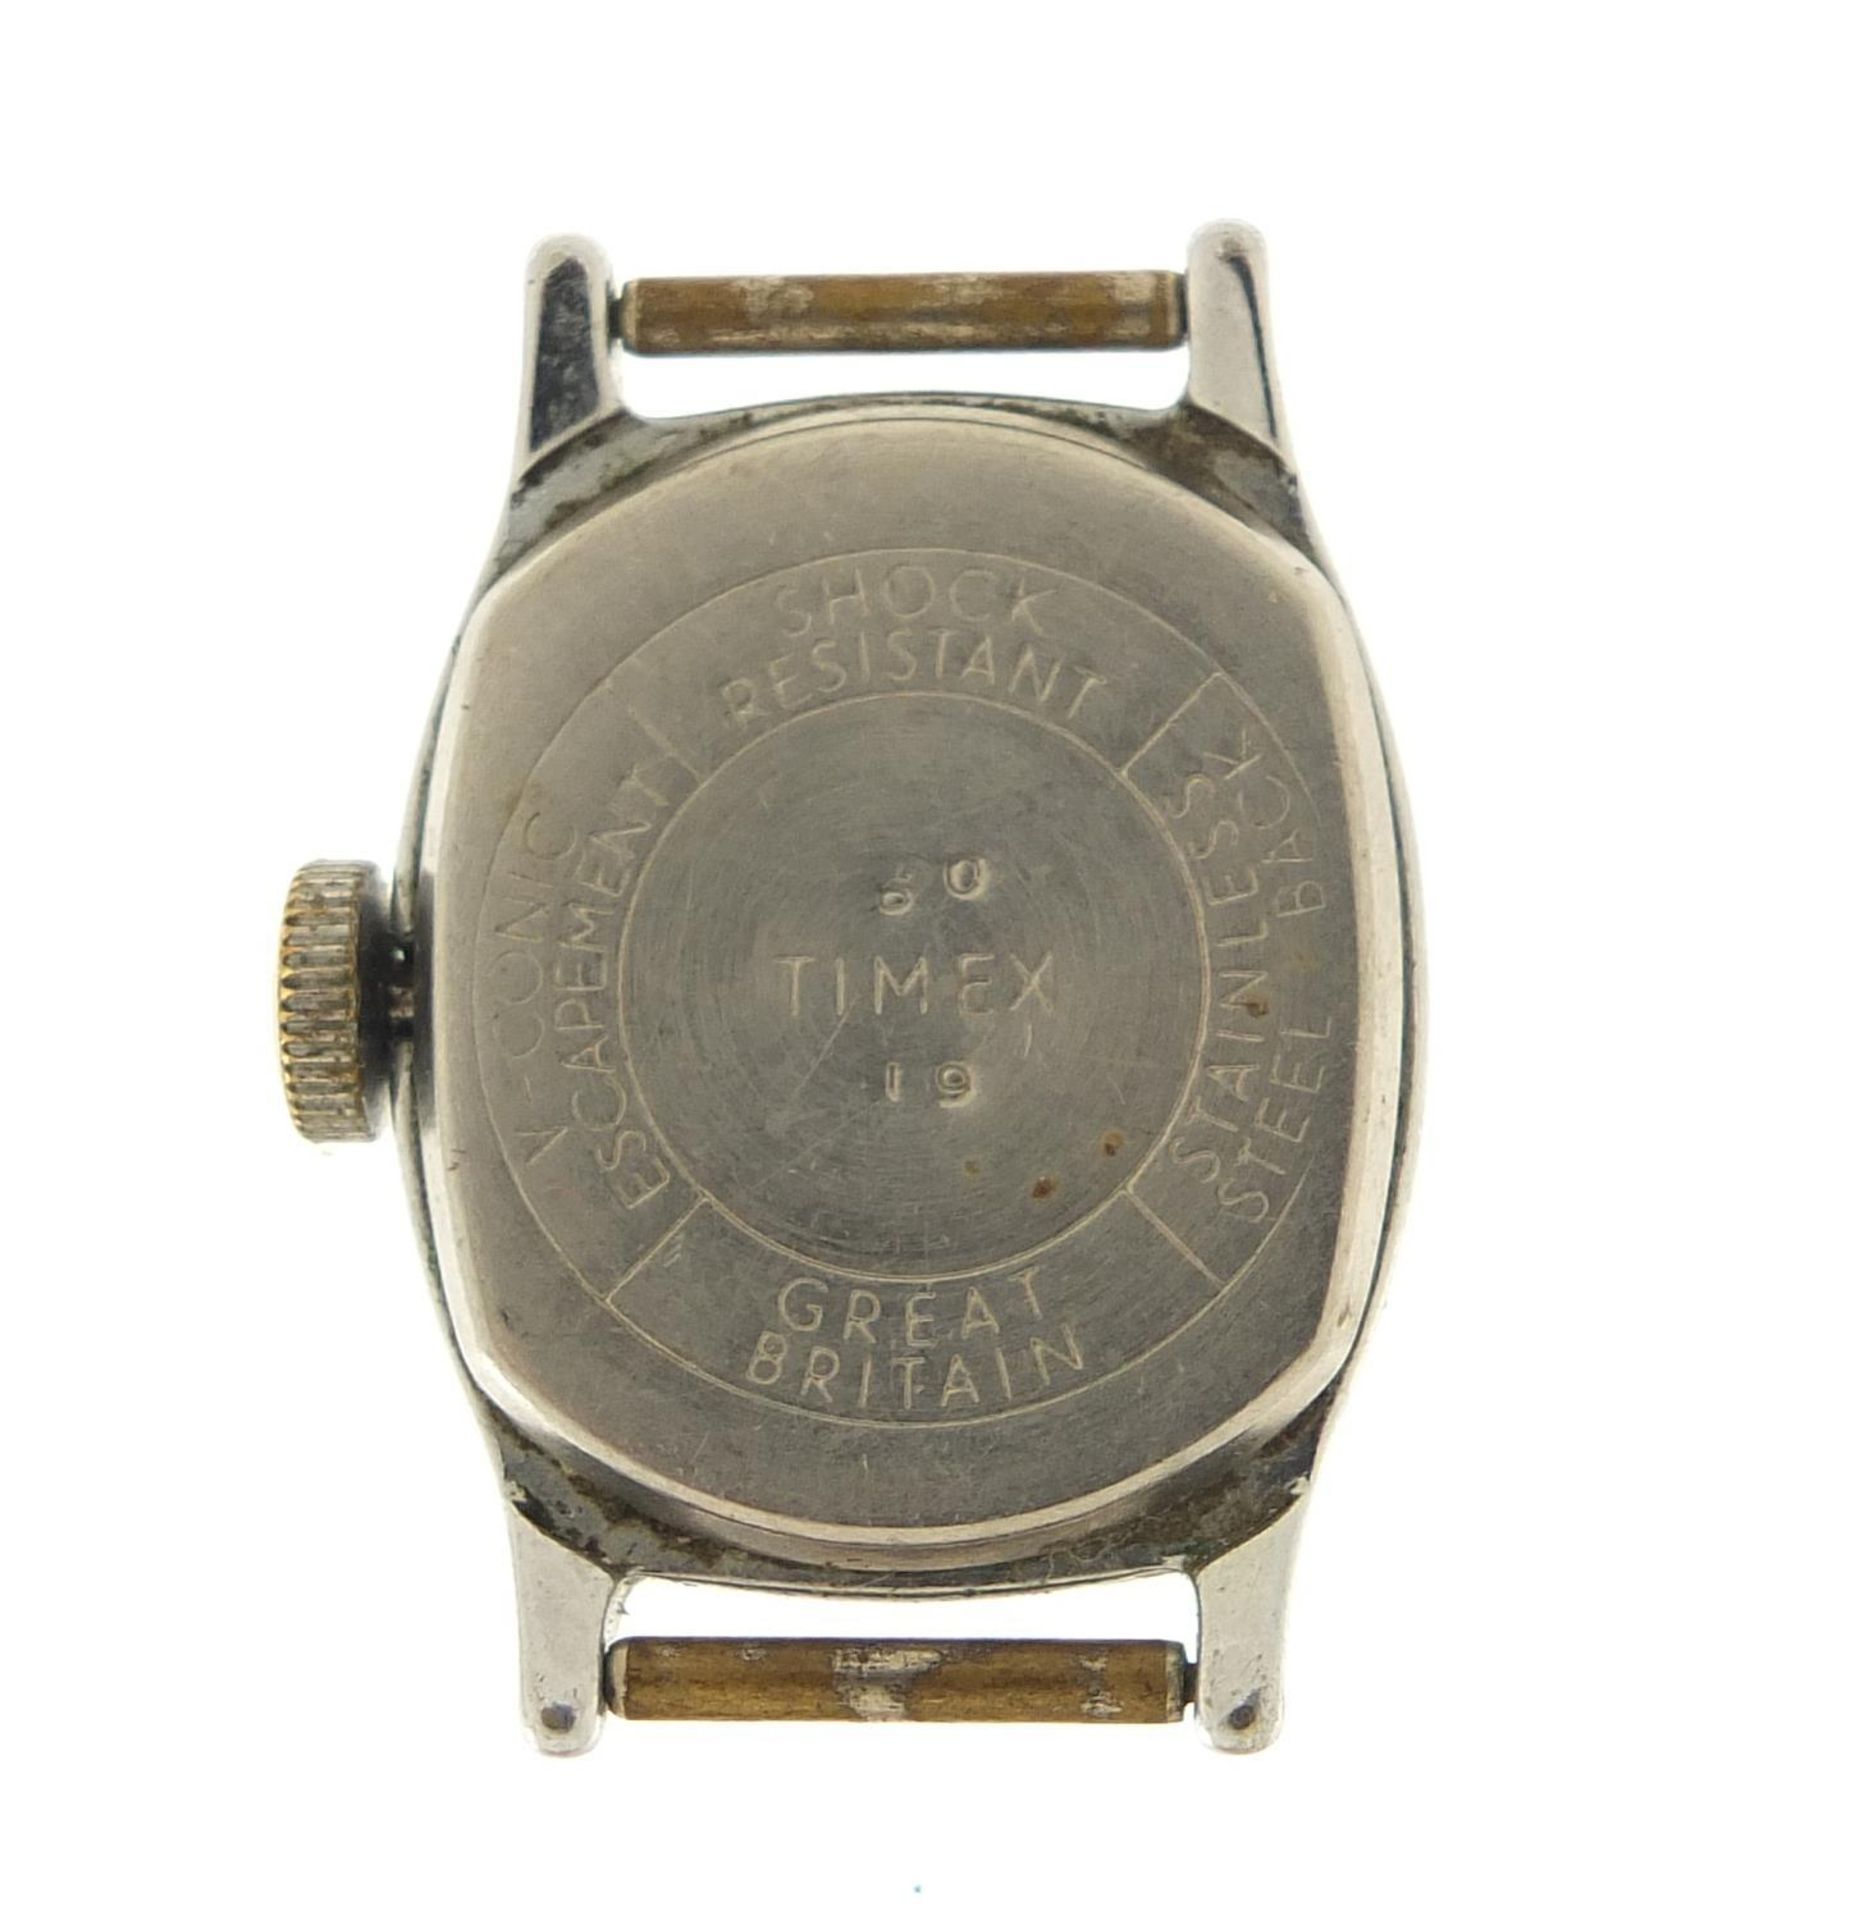 Timex, vintage Walt Disney Cinderella wristwatch, the case 23mm wide - Image 3 of 3